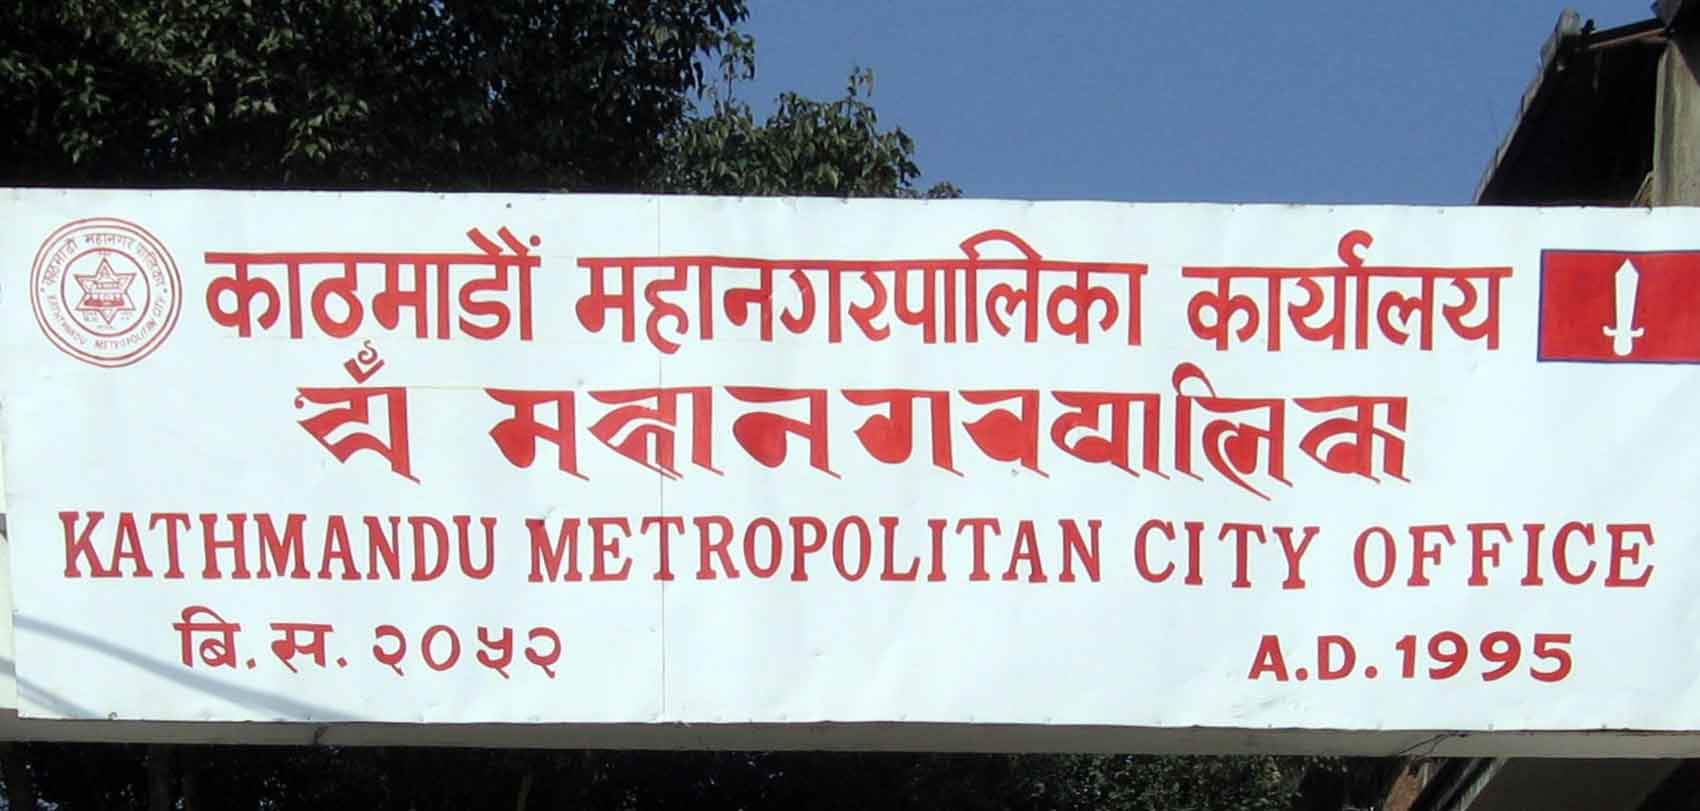 काठमाडौं महानगरपालिकामा घरबहाल विवरण बुझाउने न्यून